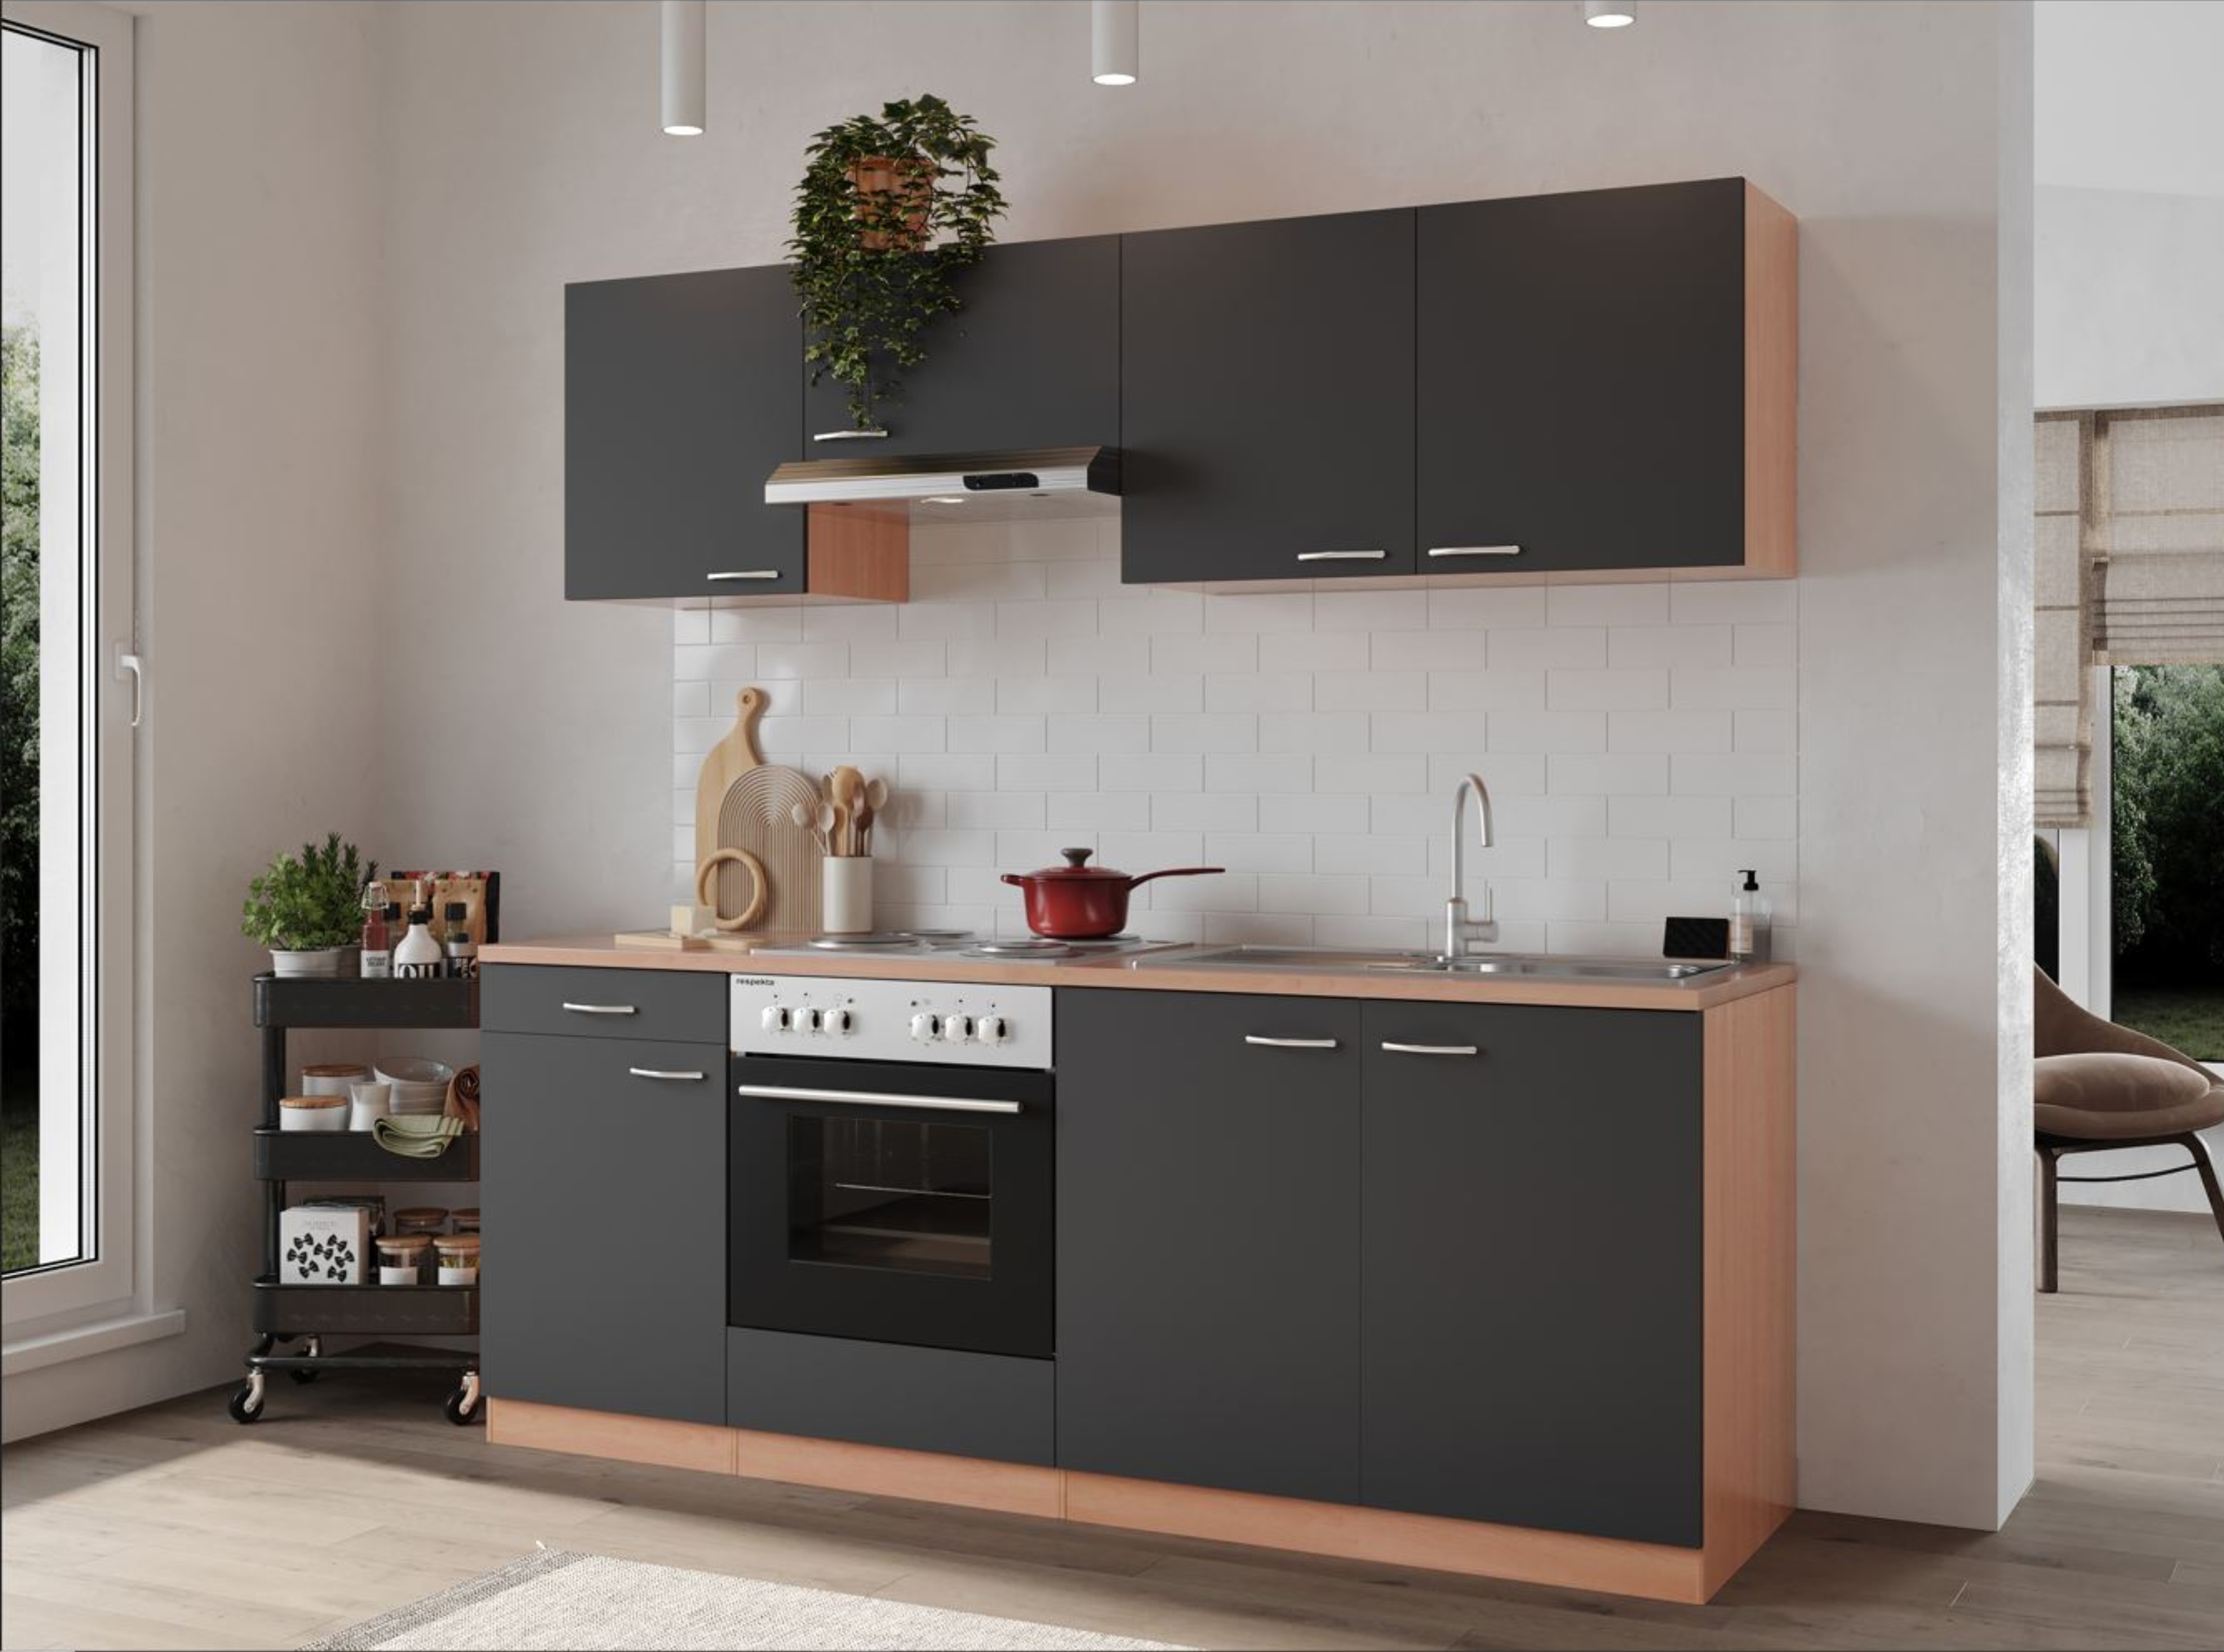 respekta kitchen kitchen unit fitted kitchen complete 210 cm beech grey